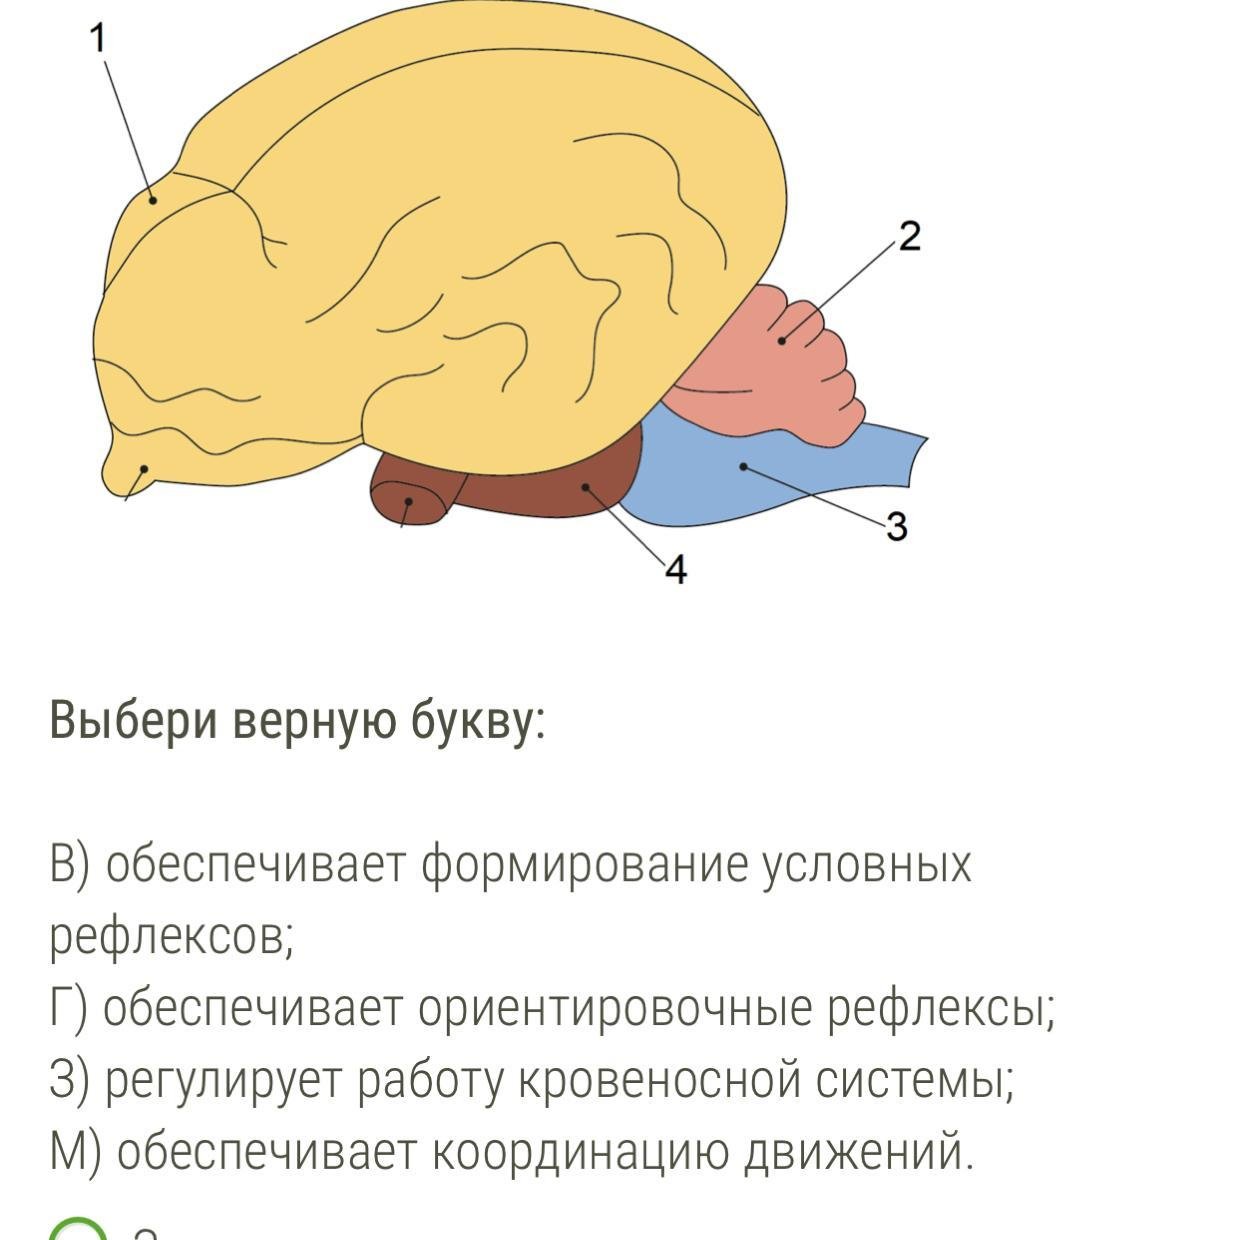 Какие функции выполняют отделы мозга у птиц. Мозг млекопитающих. Отделы головного мозга млекопитающих. Строение головного мозга млекопитающих. Функции мозга млекопитающих.